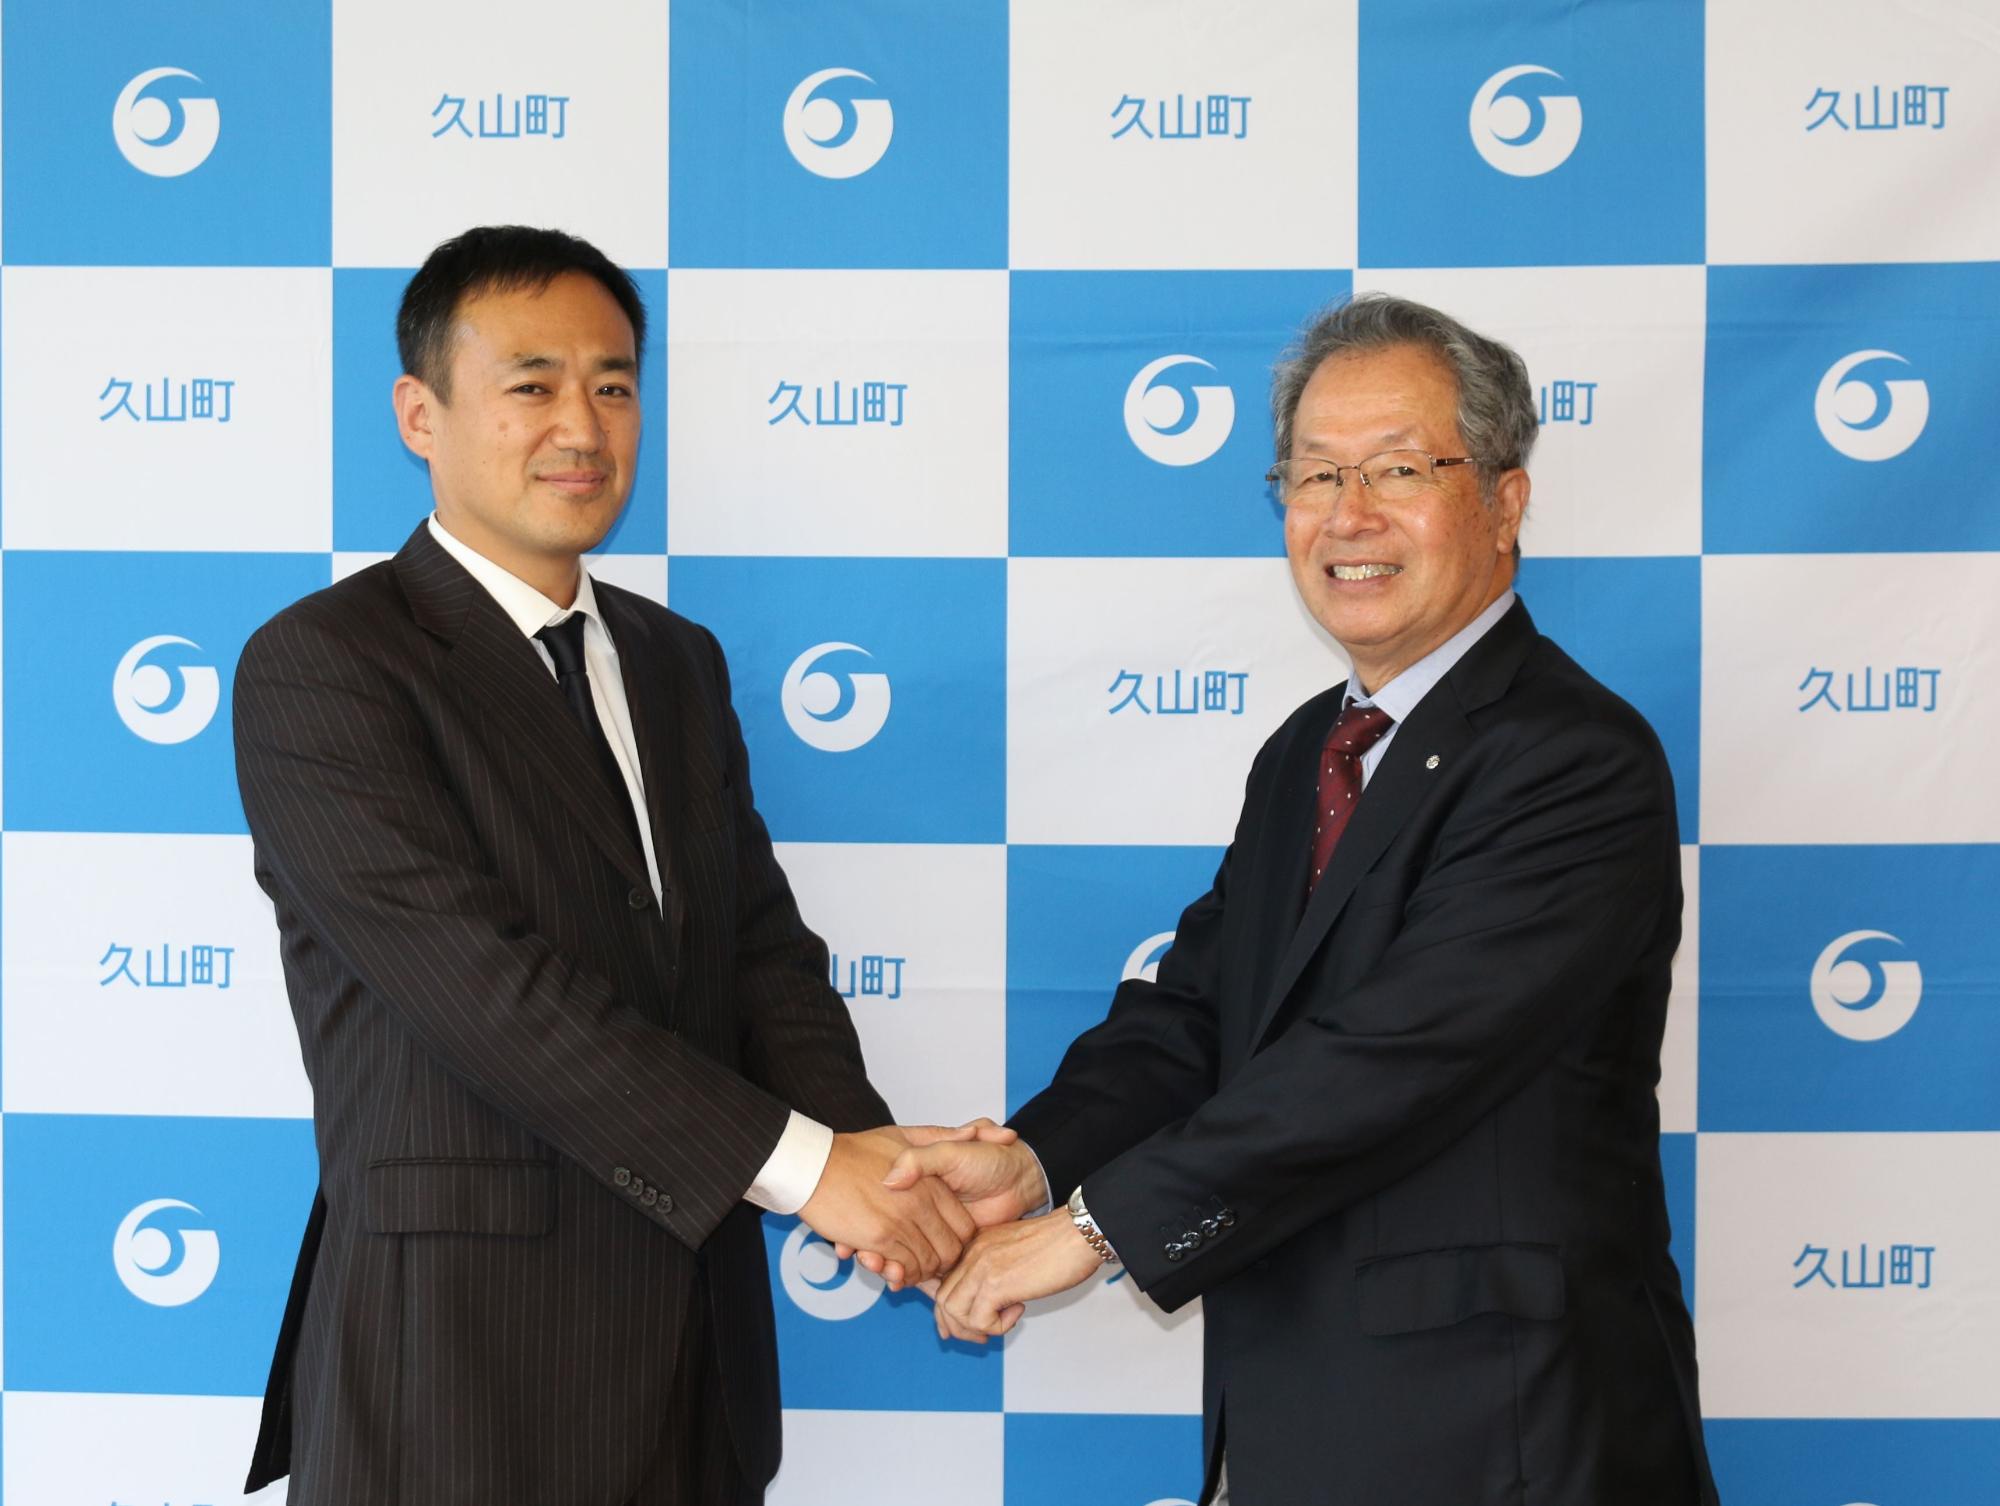 九州大学馬奈木教授と久芳菊司町長が両手で握手をしている写真。